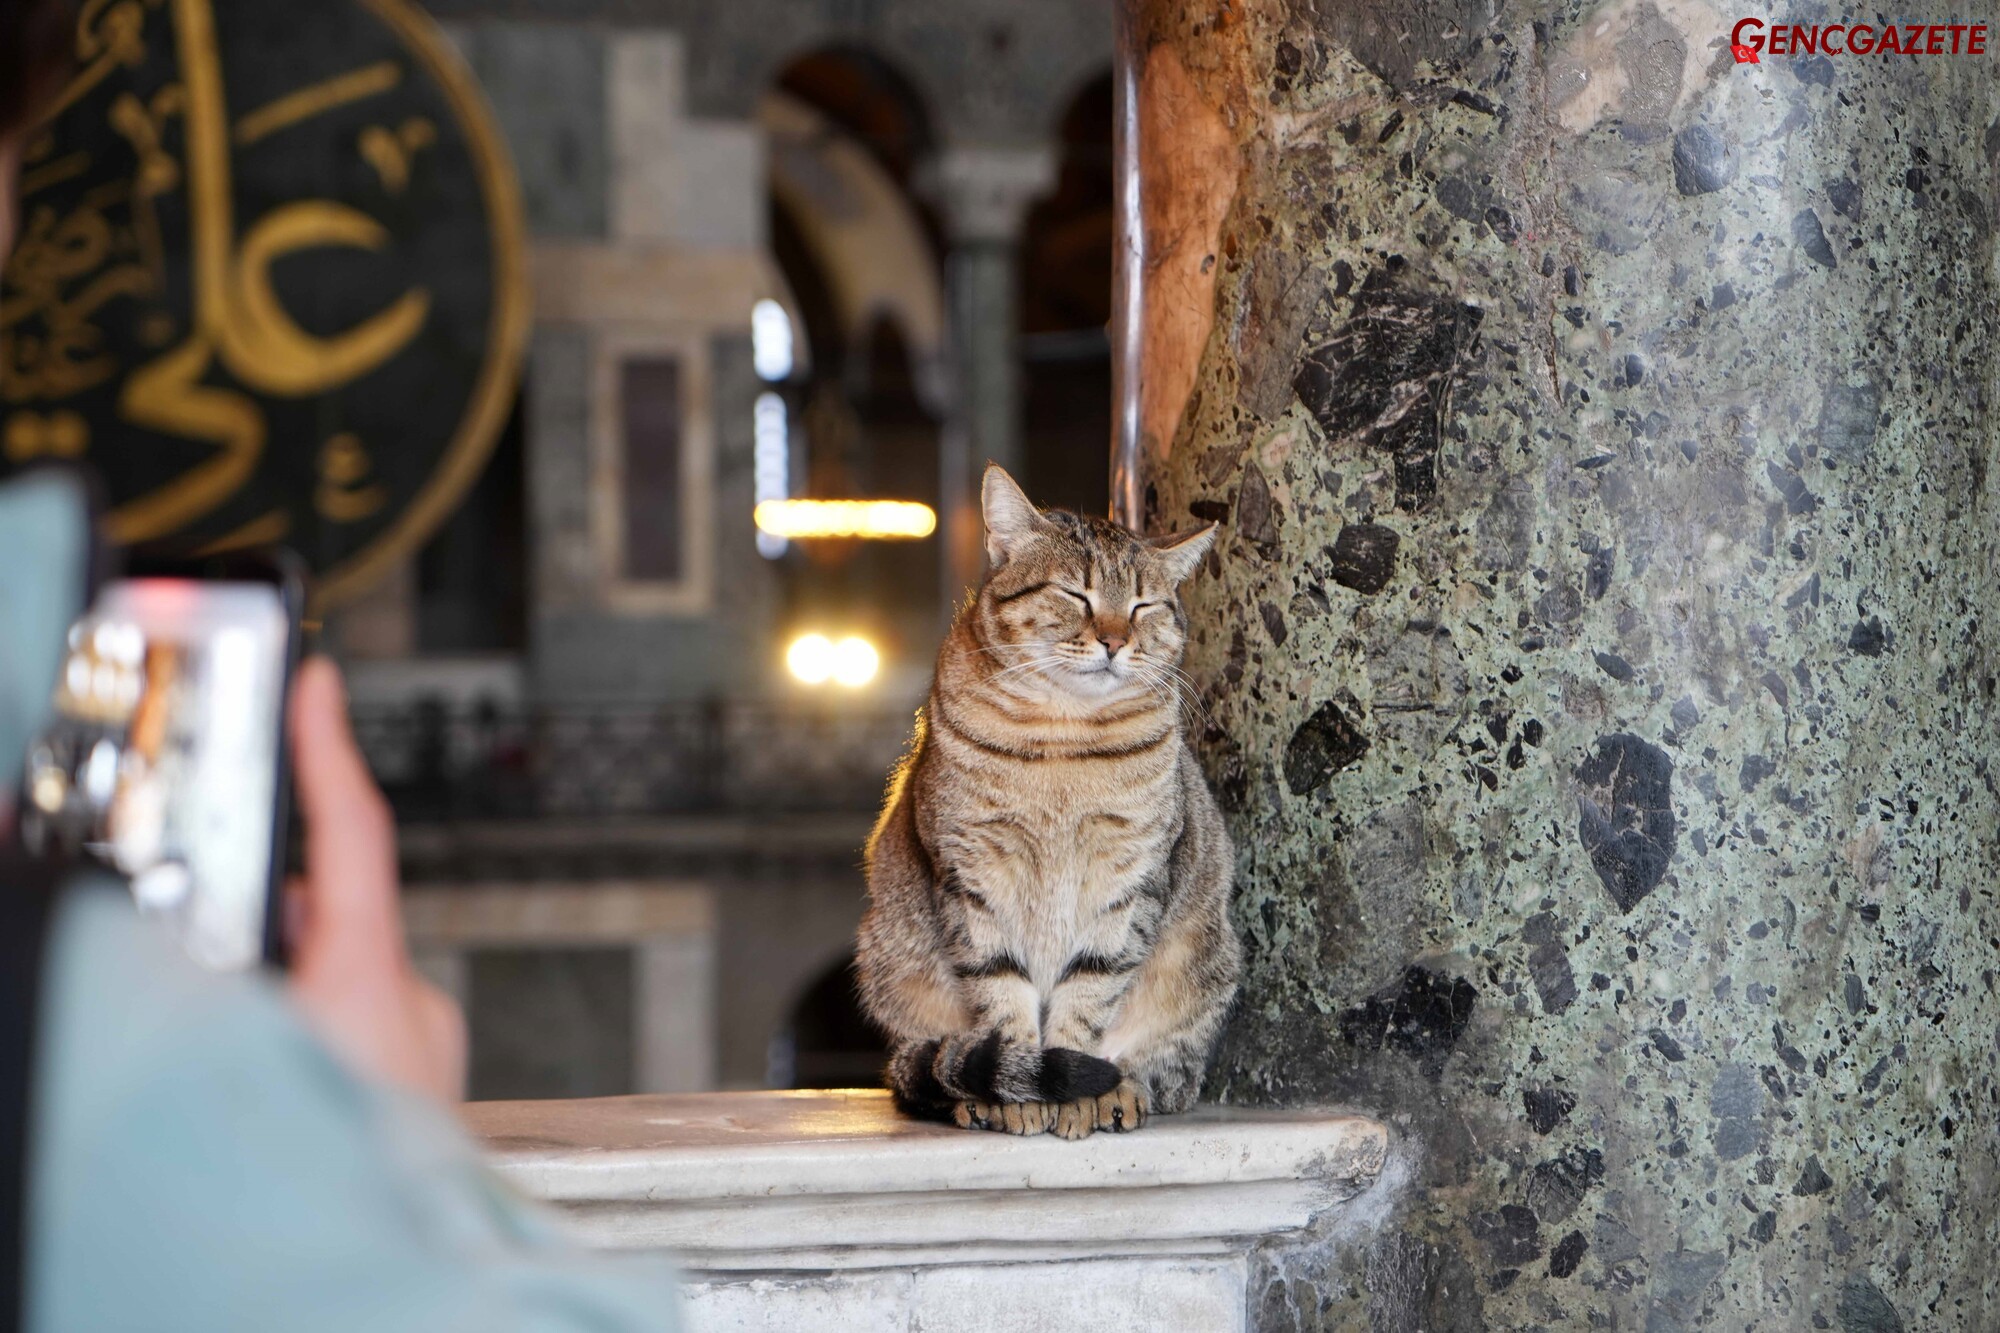 Genç Gazete Ayasofya'nın Yeni Gözde Kedisi Gli'nin Mirasını Devraldı (1)